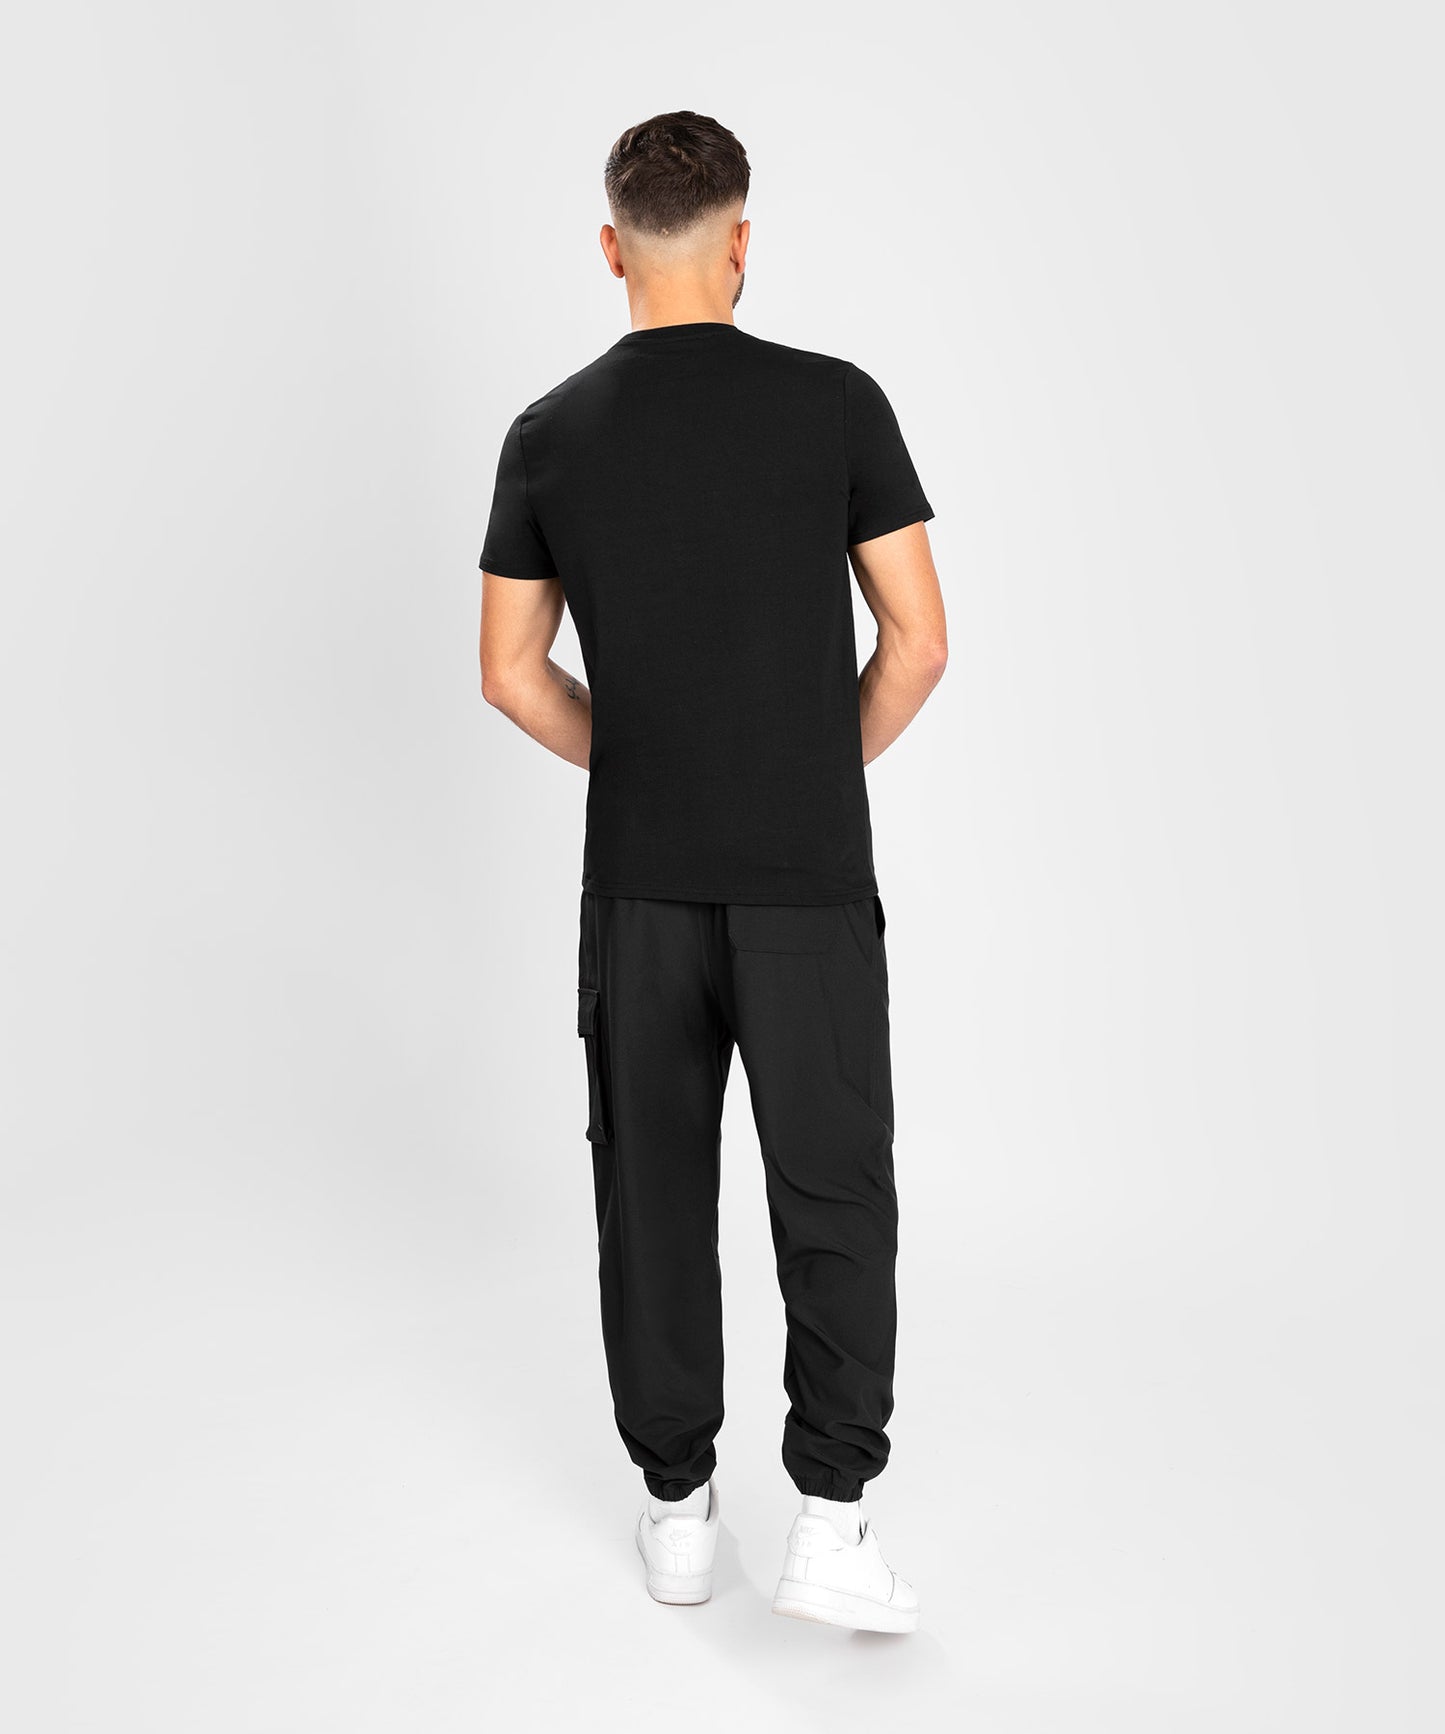 T-shirt Venum Absolute 2.0 - Coupe ajustée - Noir/Argent